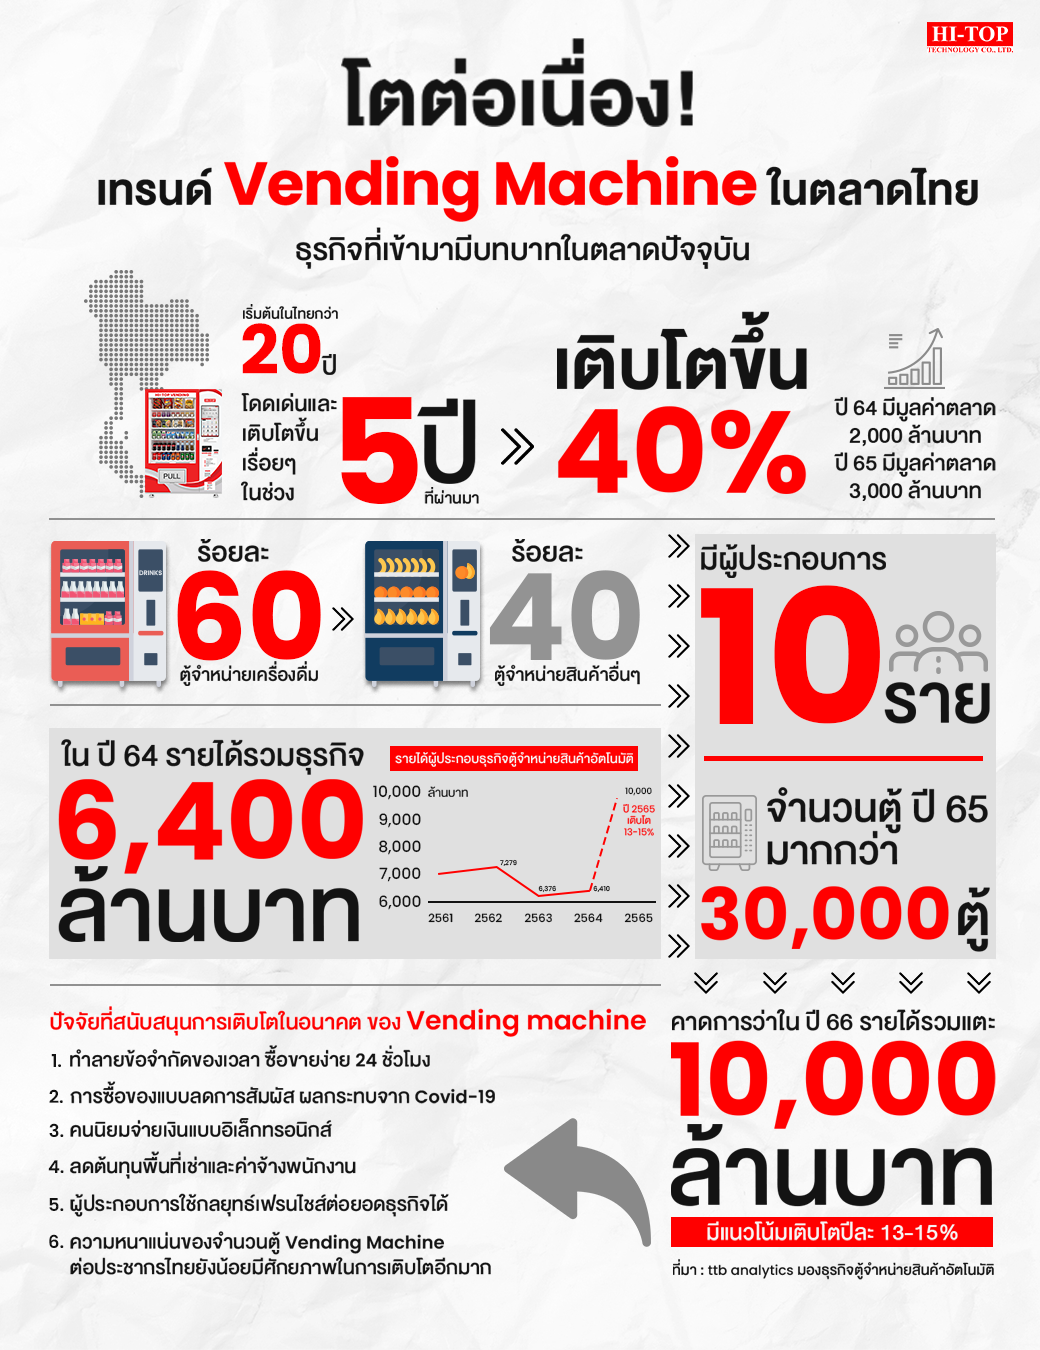 โตต่อเนื่อง! เทรนด์ Vending Machine ในตลาดไทย